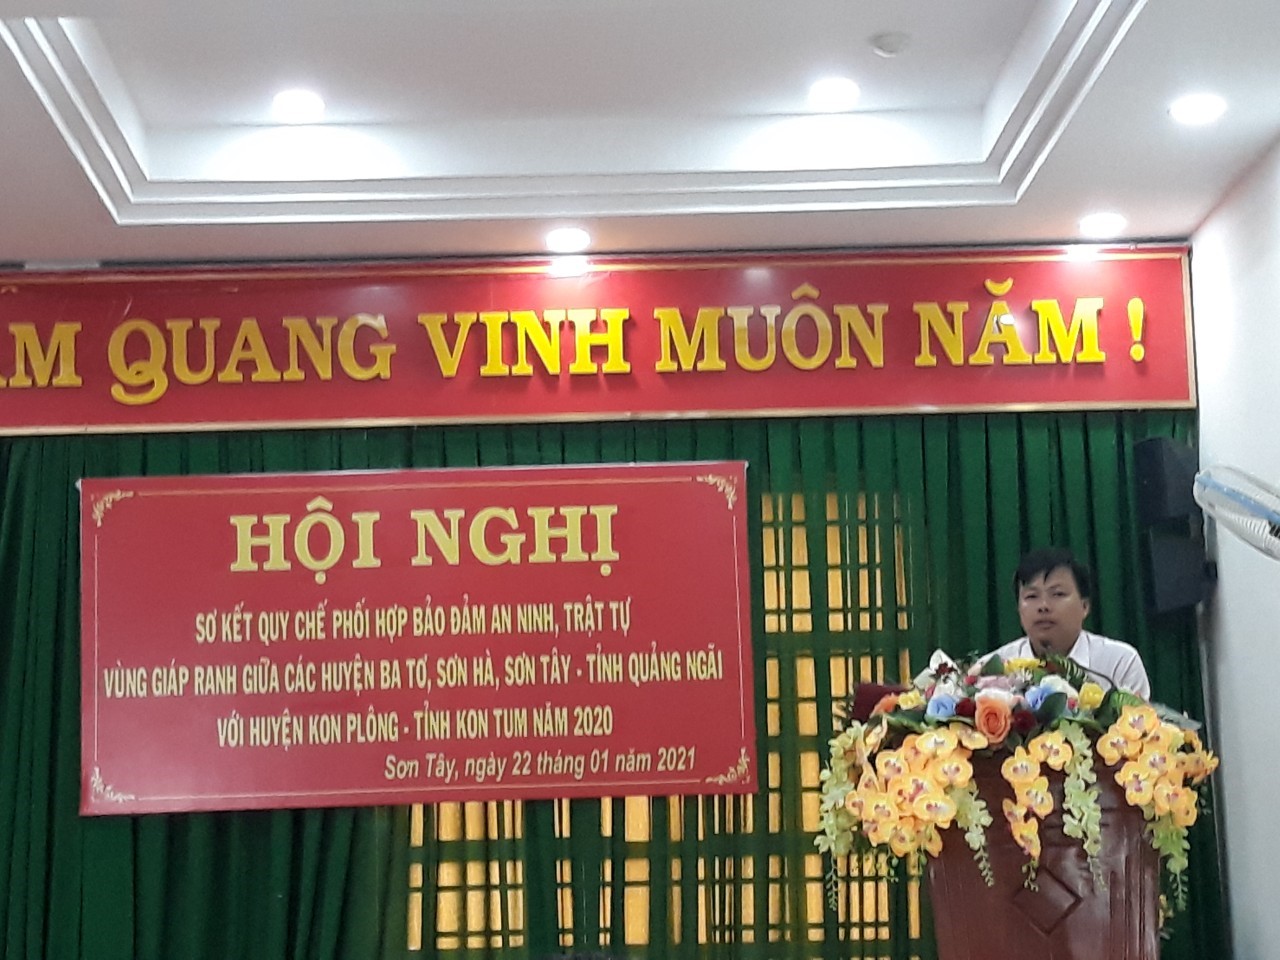 Đồng chí Lê Đức Tín - Phó chủ tịch UBND huyện Kon Plông phát biểu tiếp nhận đăng cai tổ chức Hội nghị sơ kết Quy chế phối hợp năm 2021